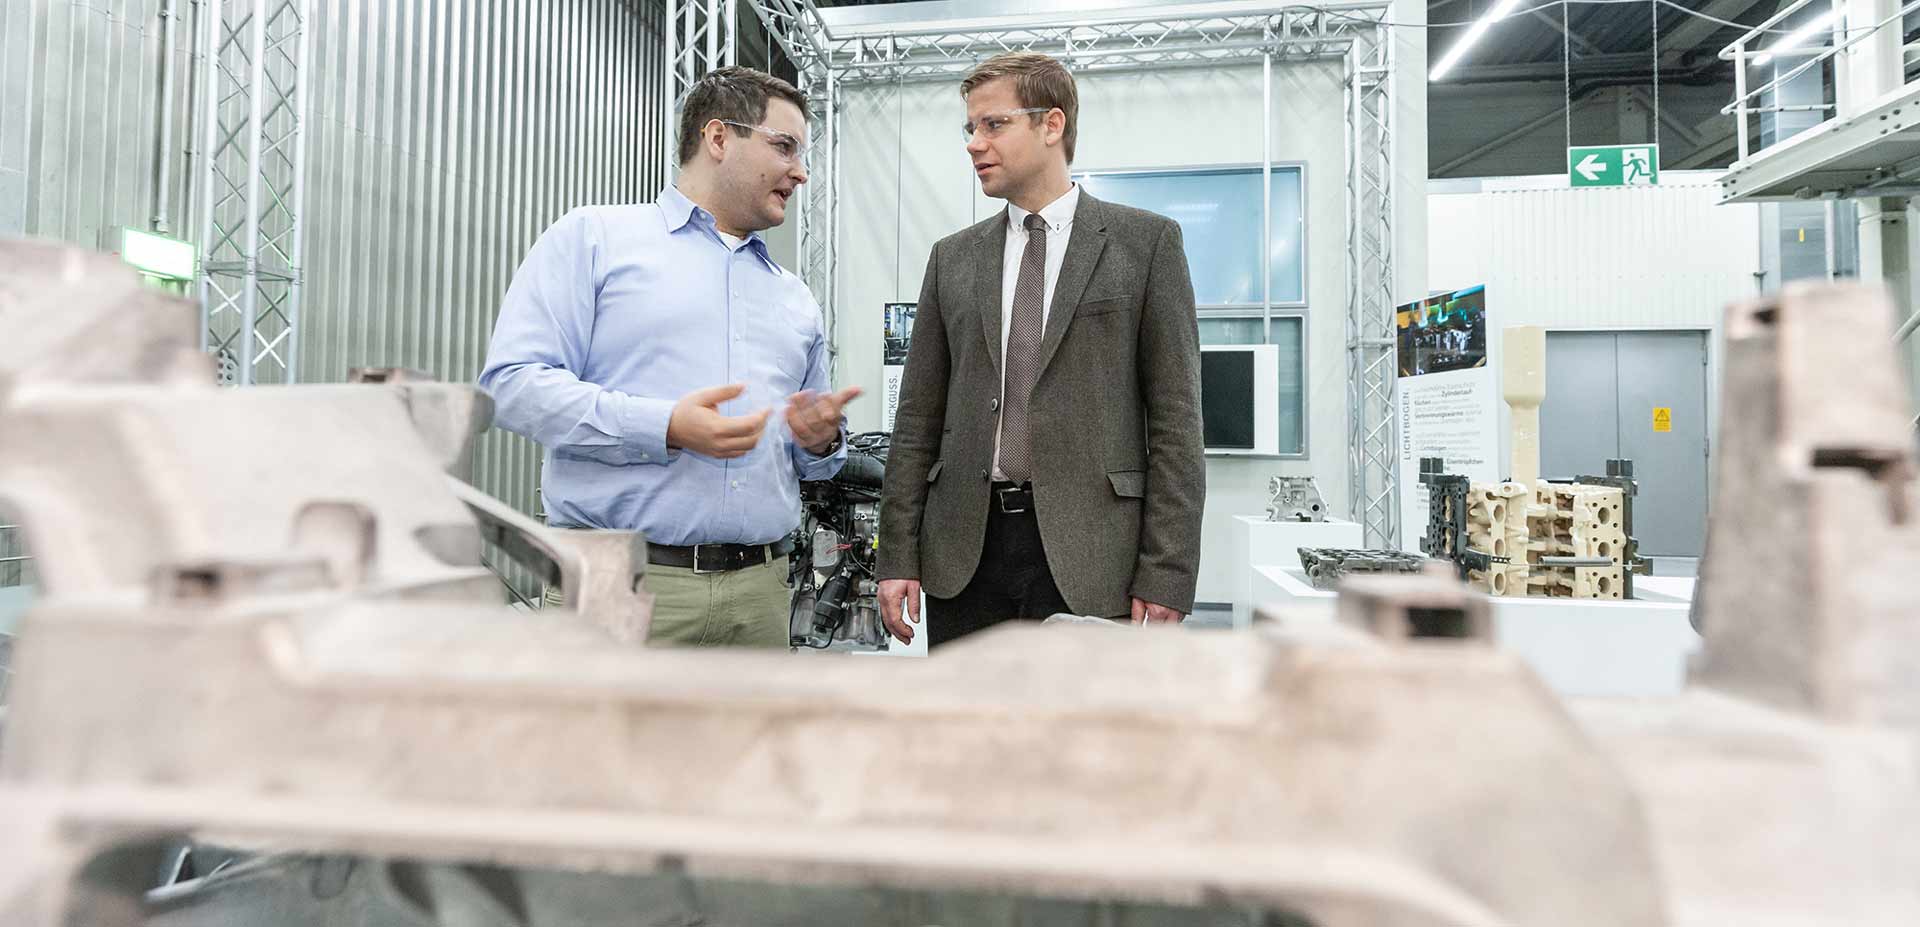 Bezirkstagspräsident Dr. Olaf Heinrich informierte sich im Werk Landshut über Zukunftstechnologien im Automobilbereich. (Foto: Harry Zdera/BMW)